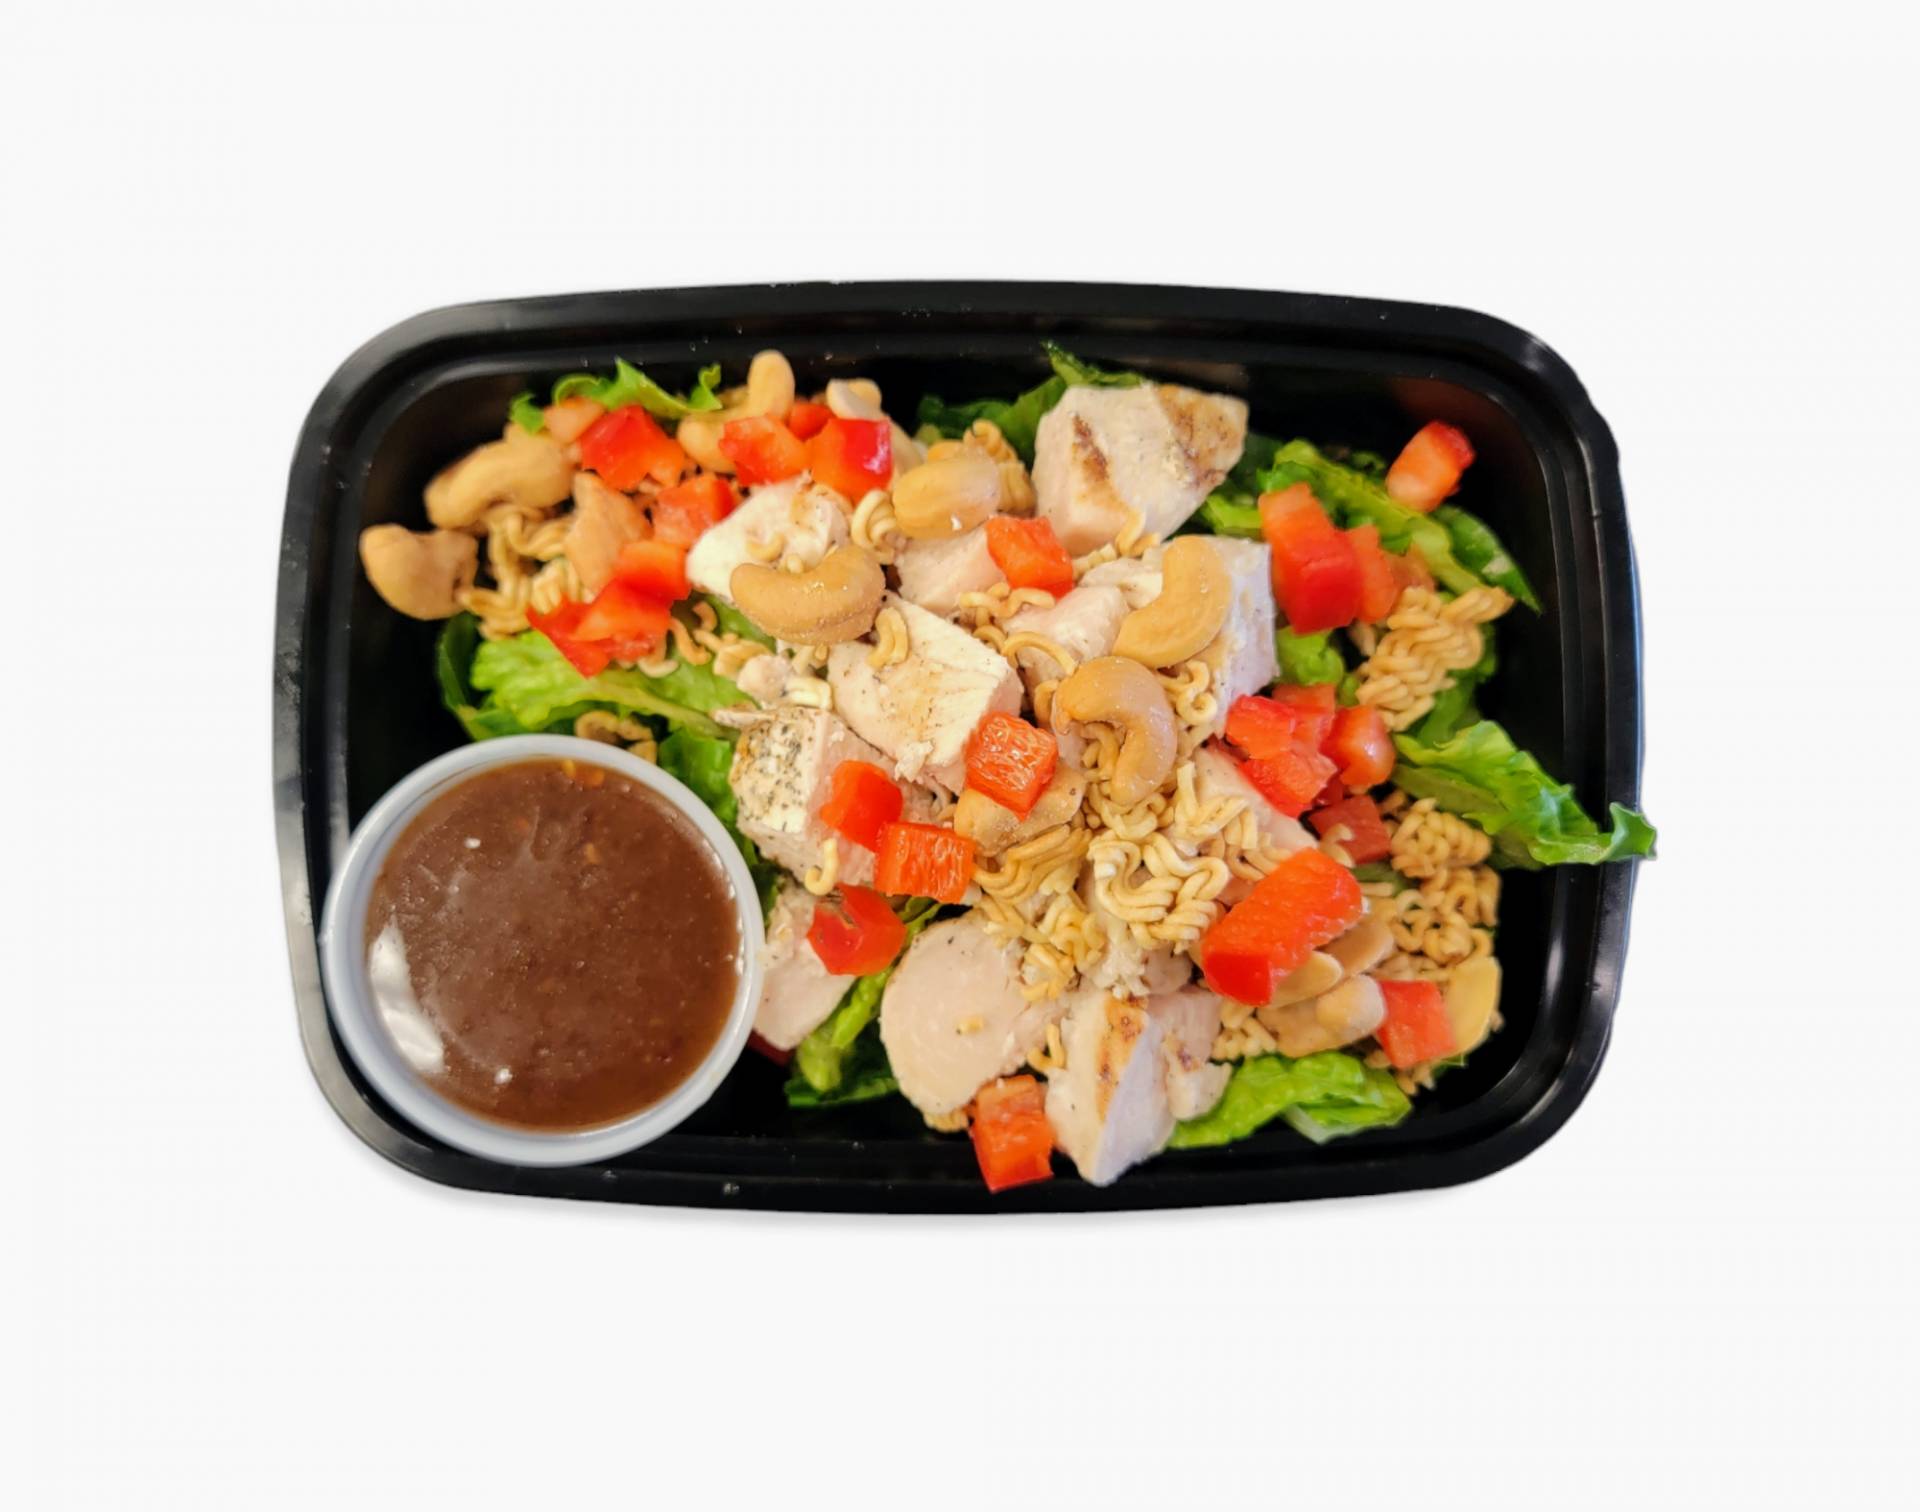 Salad - Asian Cashew Chicken